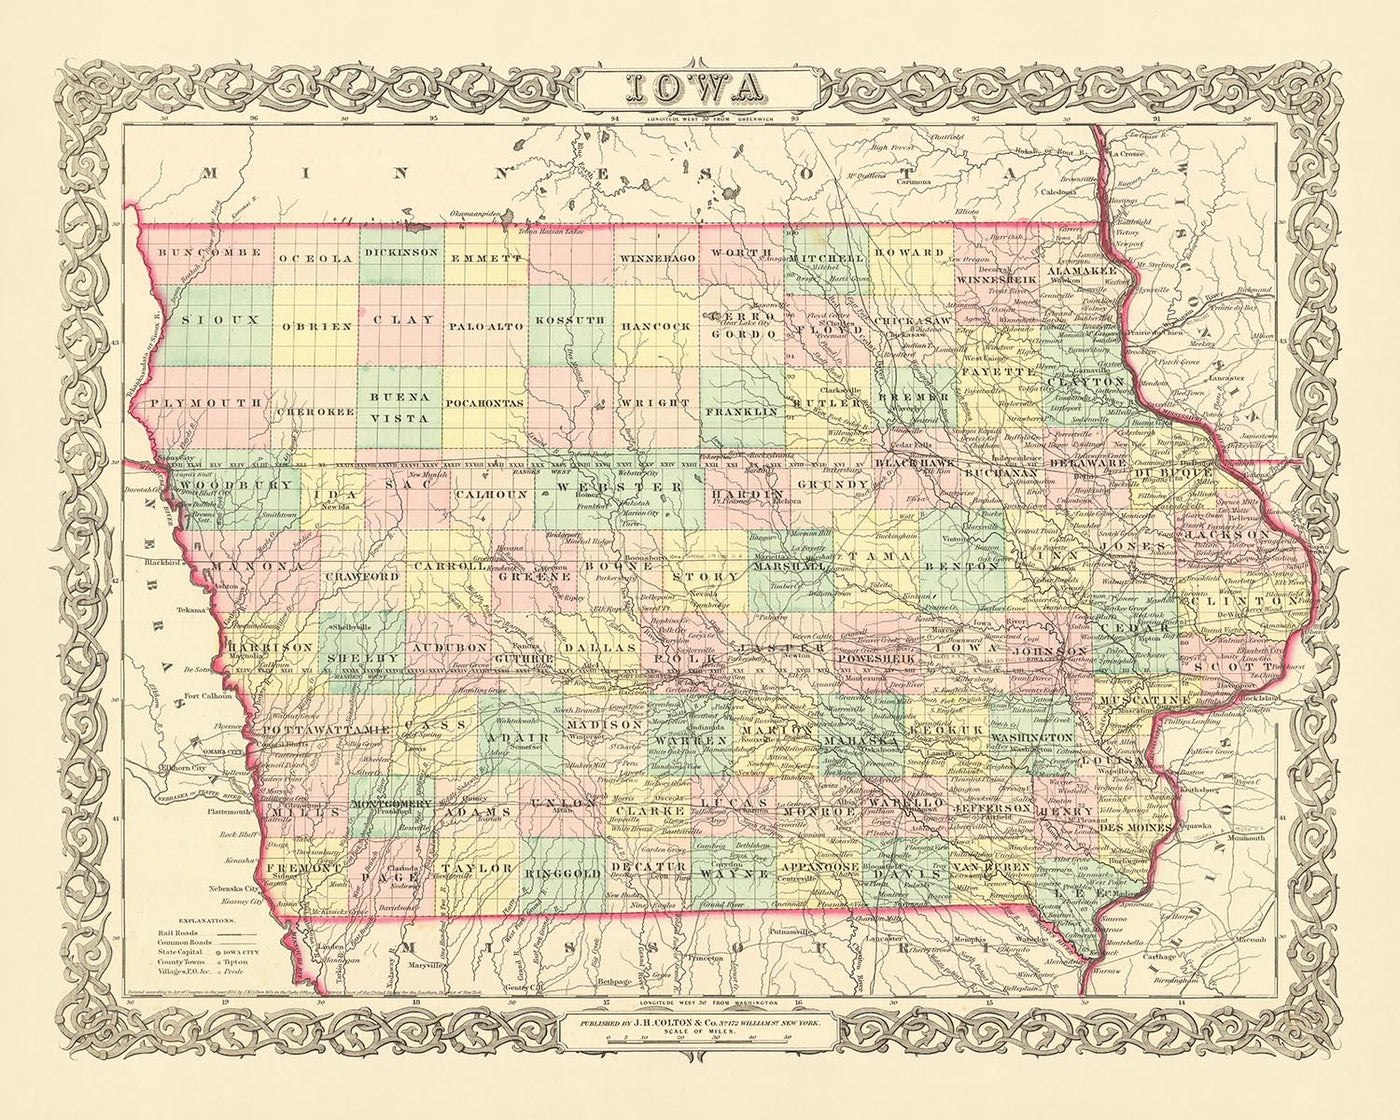 Old map of Iowa by J. H. Colton, 1856: Des Moines, Iowa City, Dubuque, Davenport, Burlington